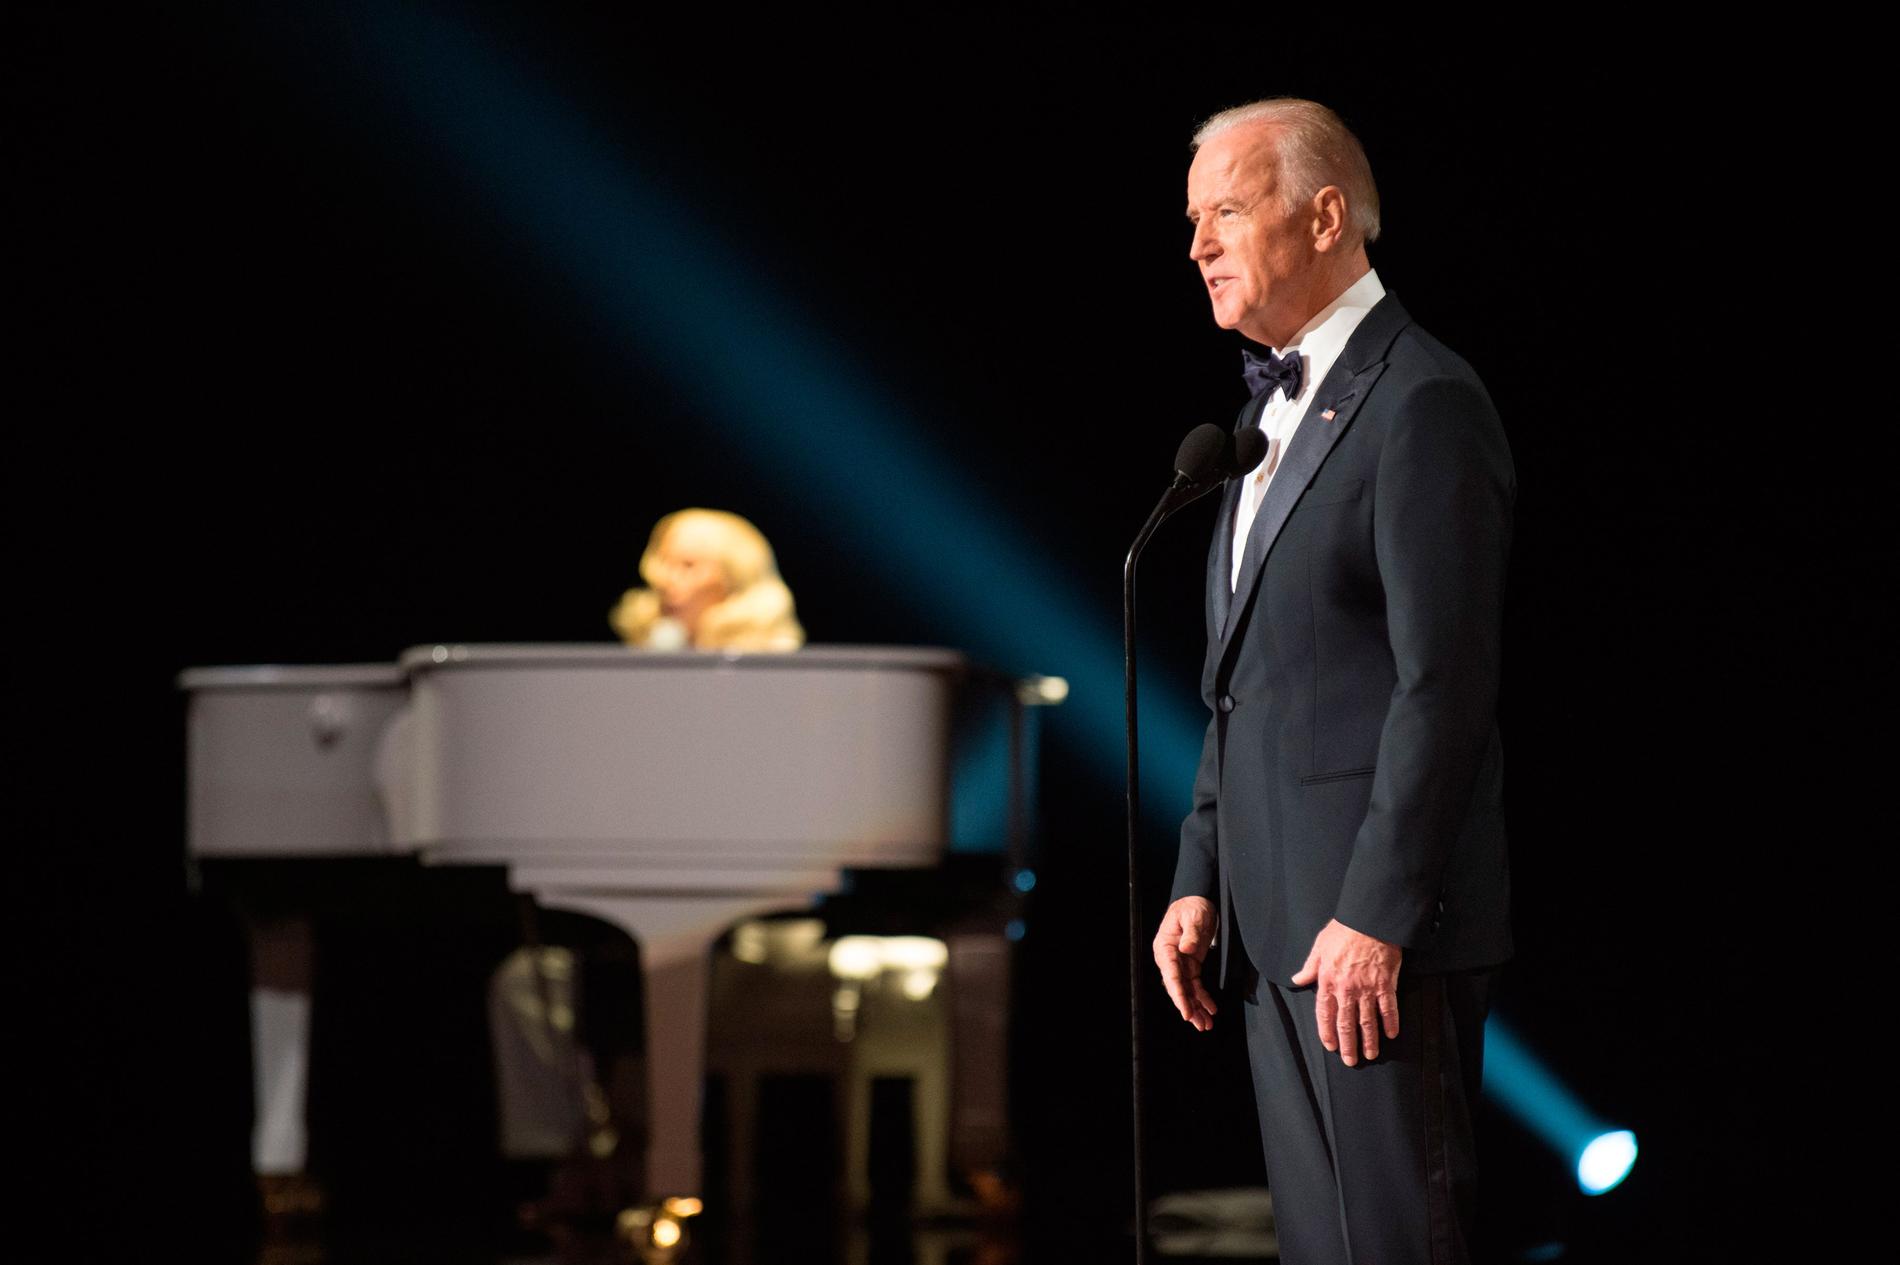 Mitt under galan dök USA:s vicepresident, Joe Biden, upp. Han var på plats för att introducera Lady Gagas liveframträdande.